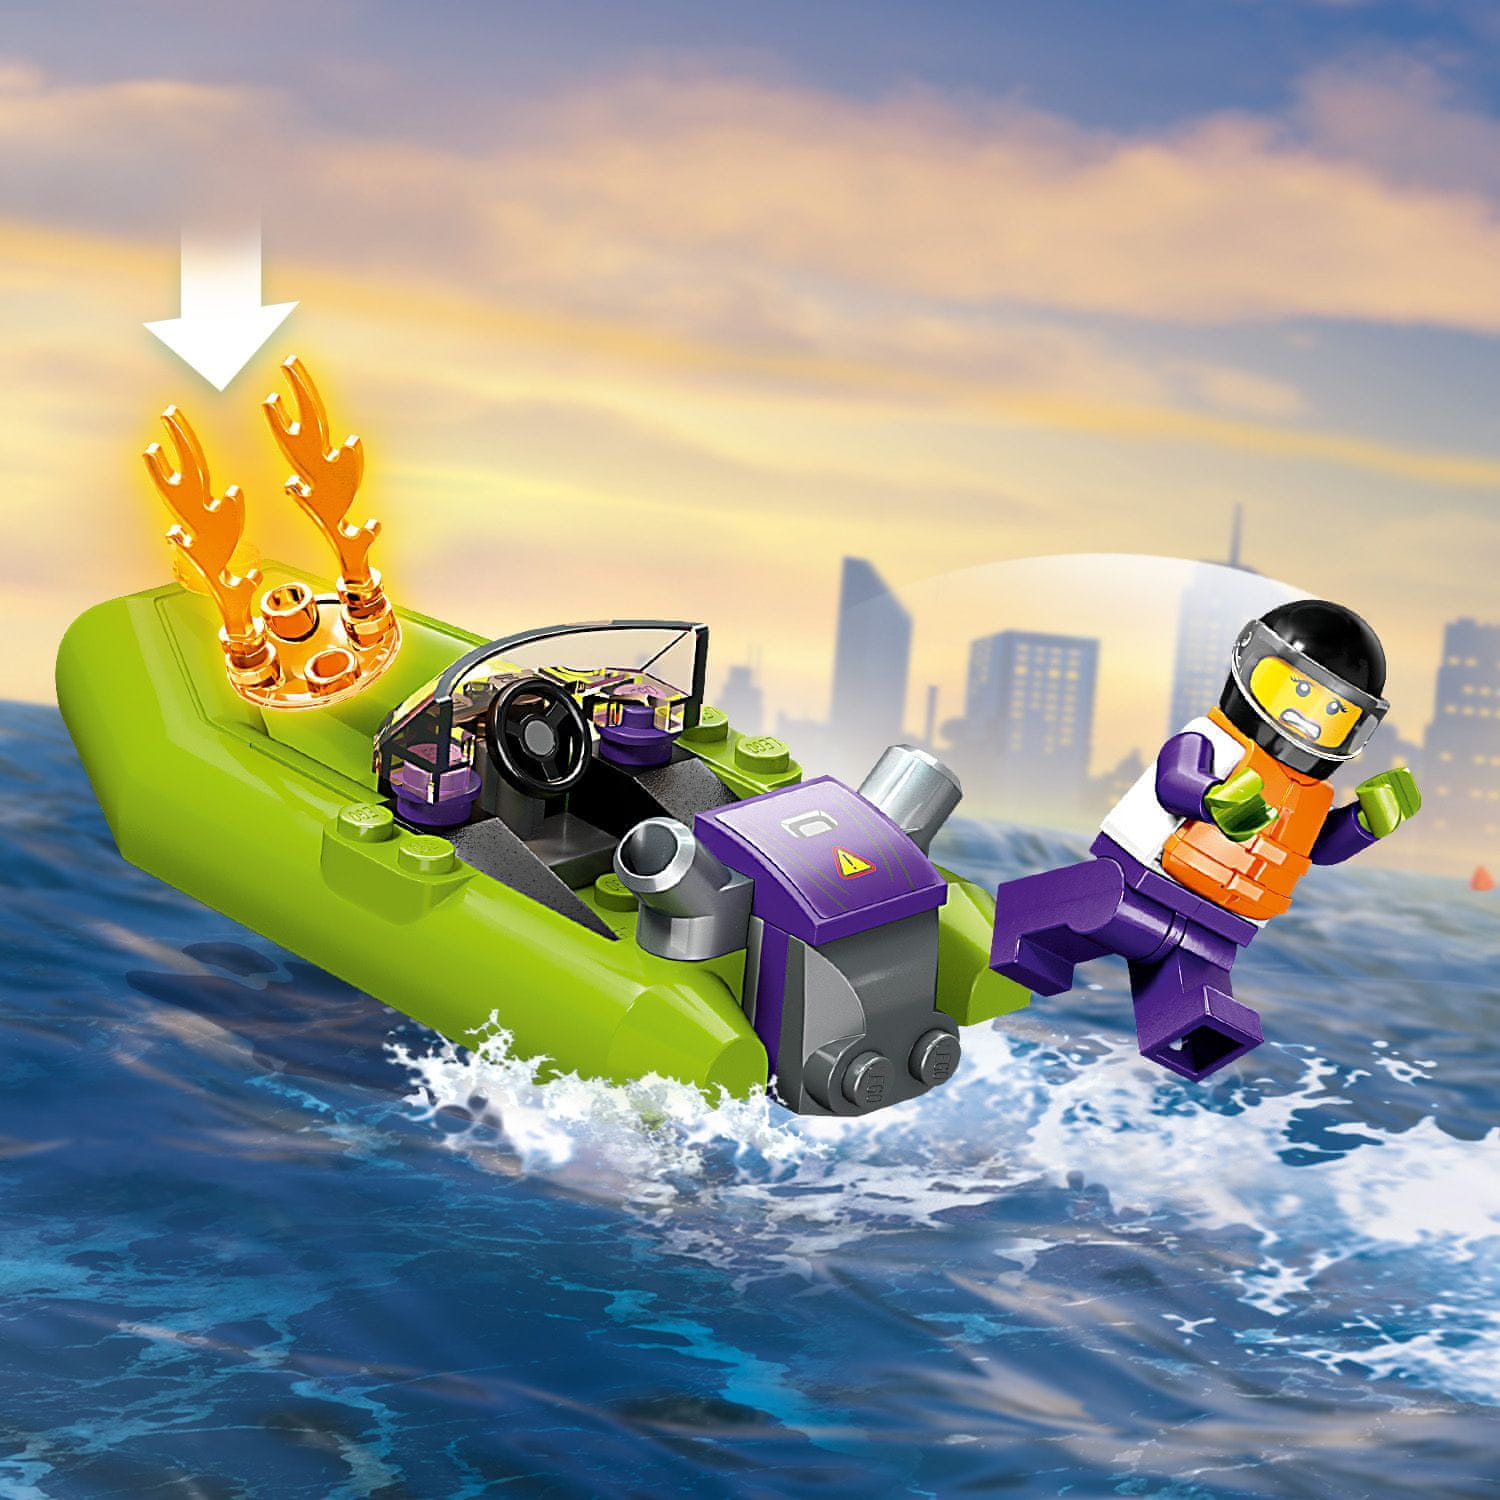 LEGO City 60373 Hasičská záchranná loď a člun